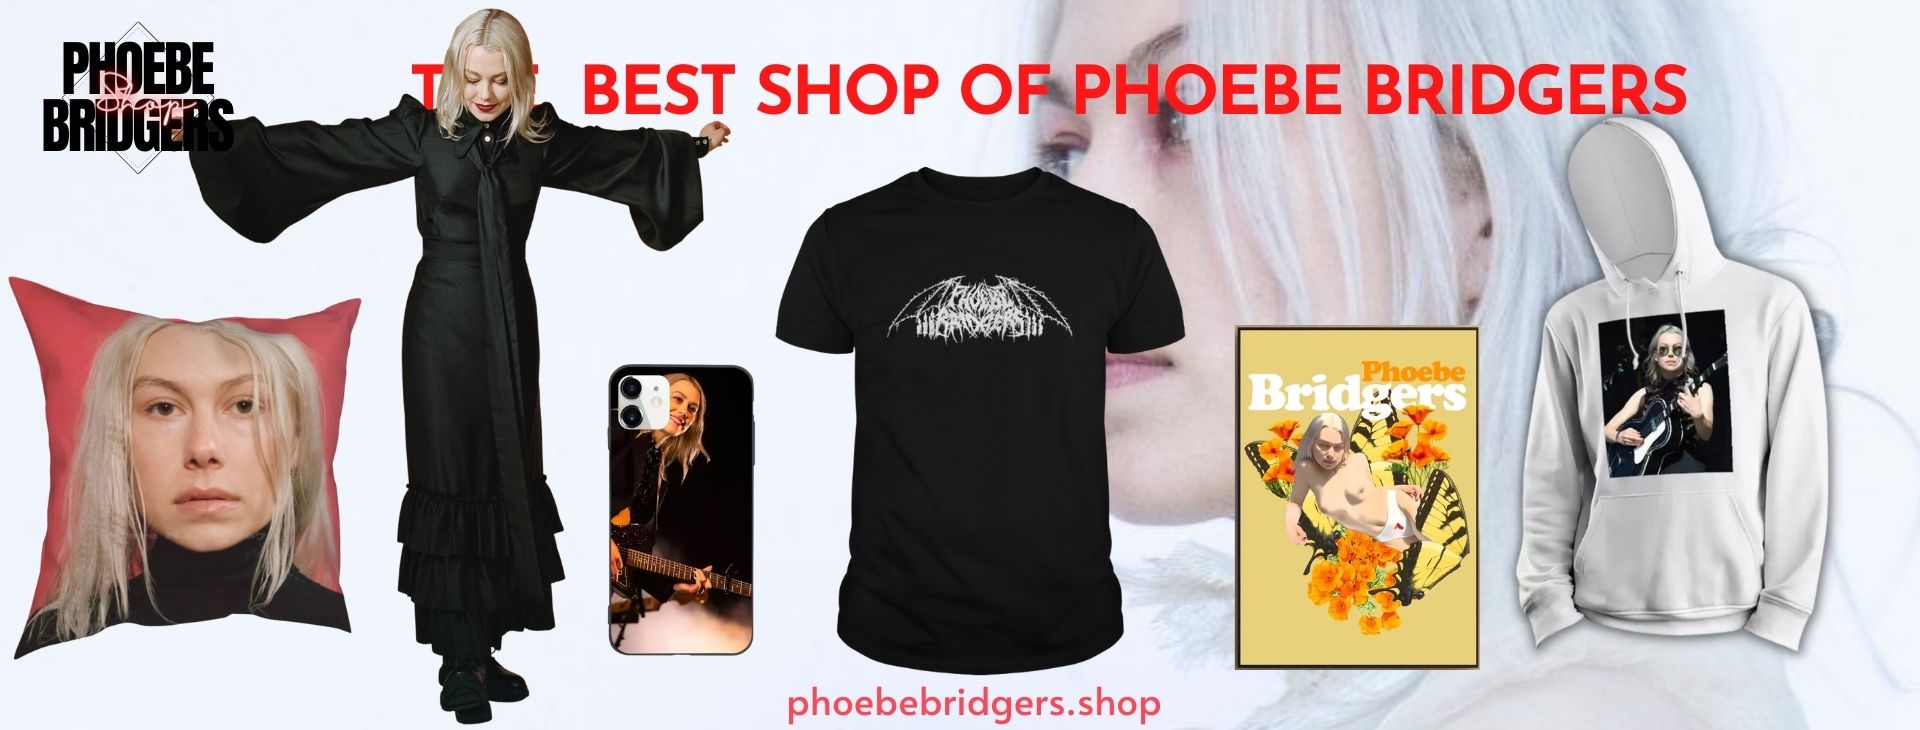 Phoebe Bridgers Shop Banner - Phoebe Bridgers Shop